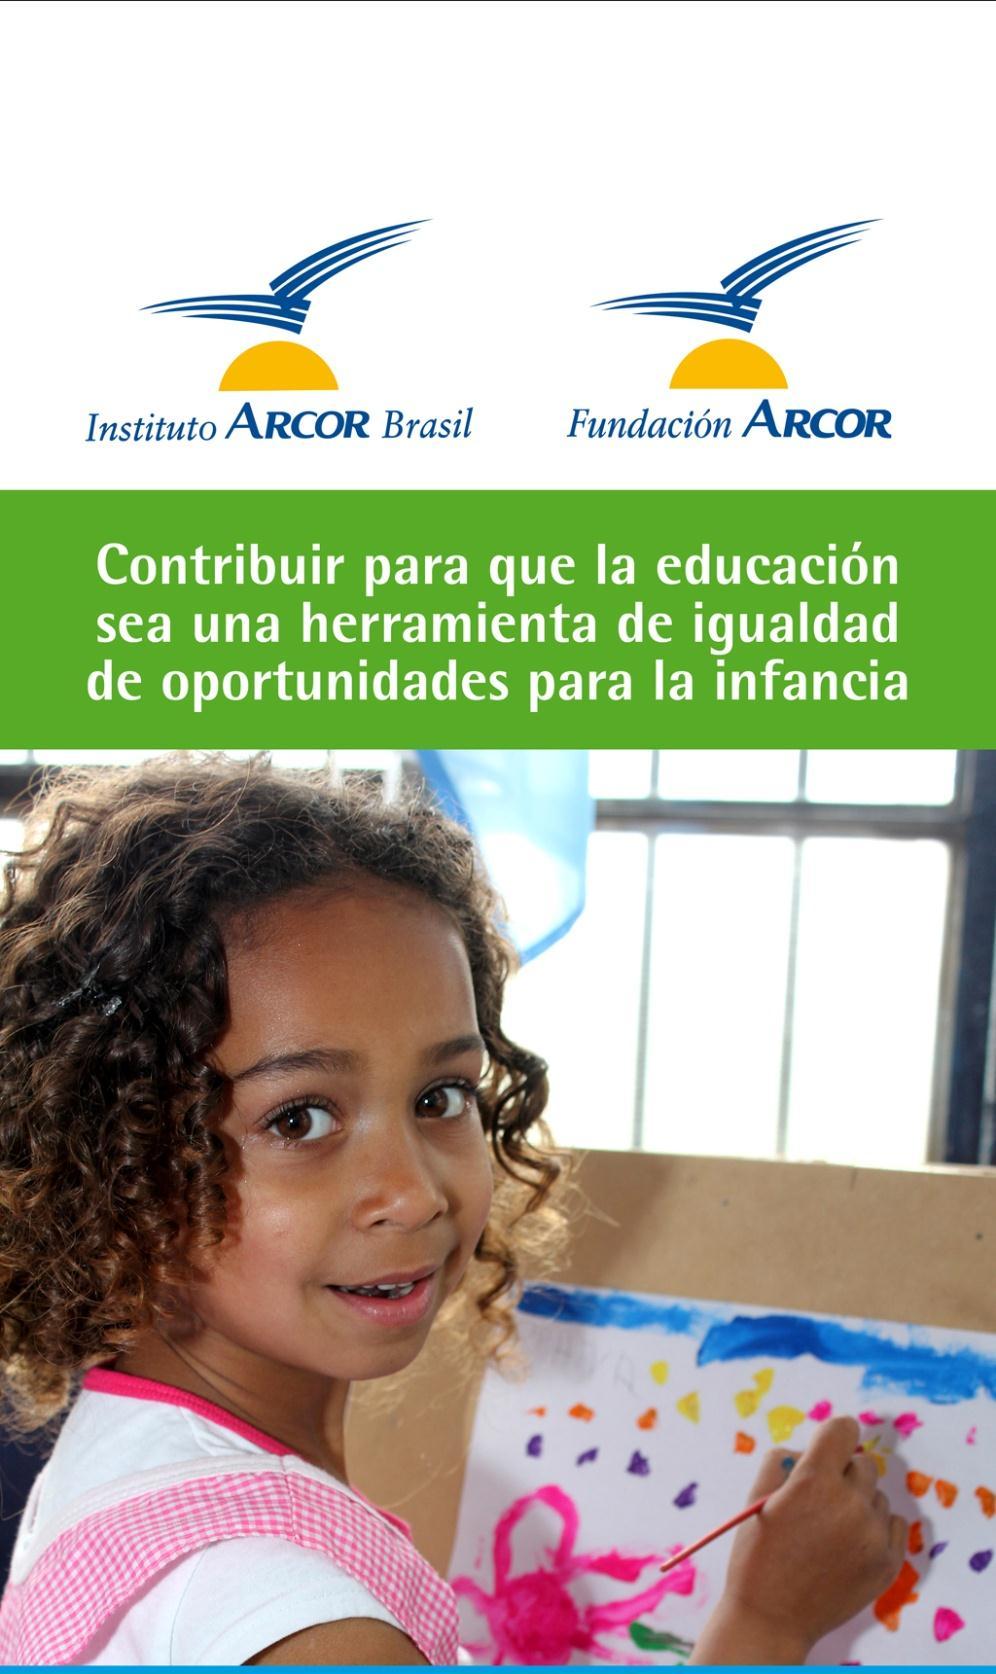 2.000 proyectos educativos apoyados en Argentina y Brasil Más de 30.